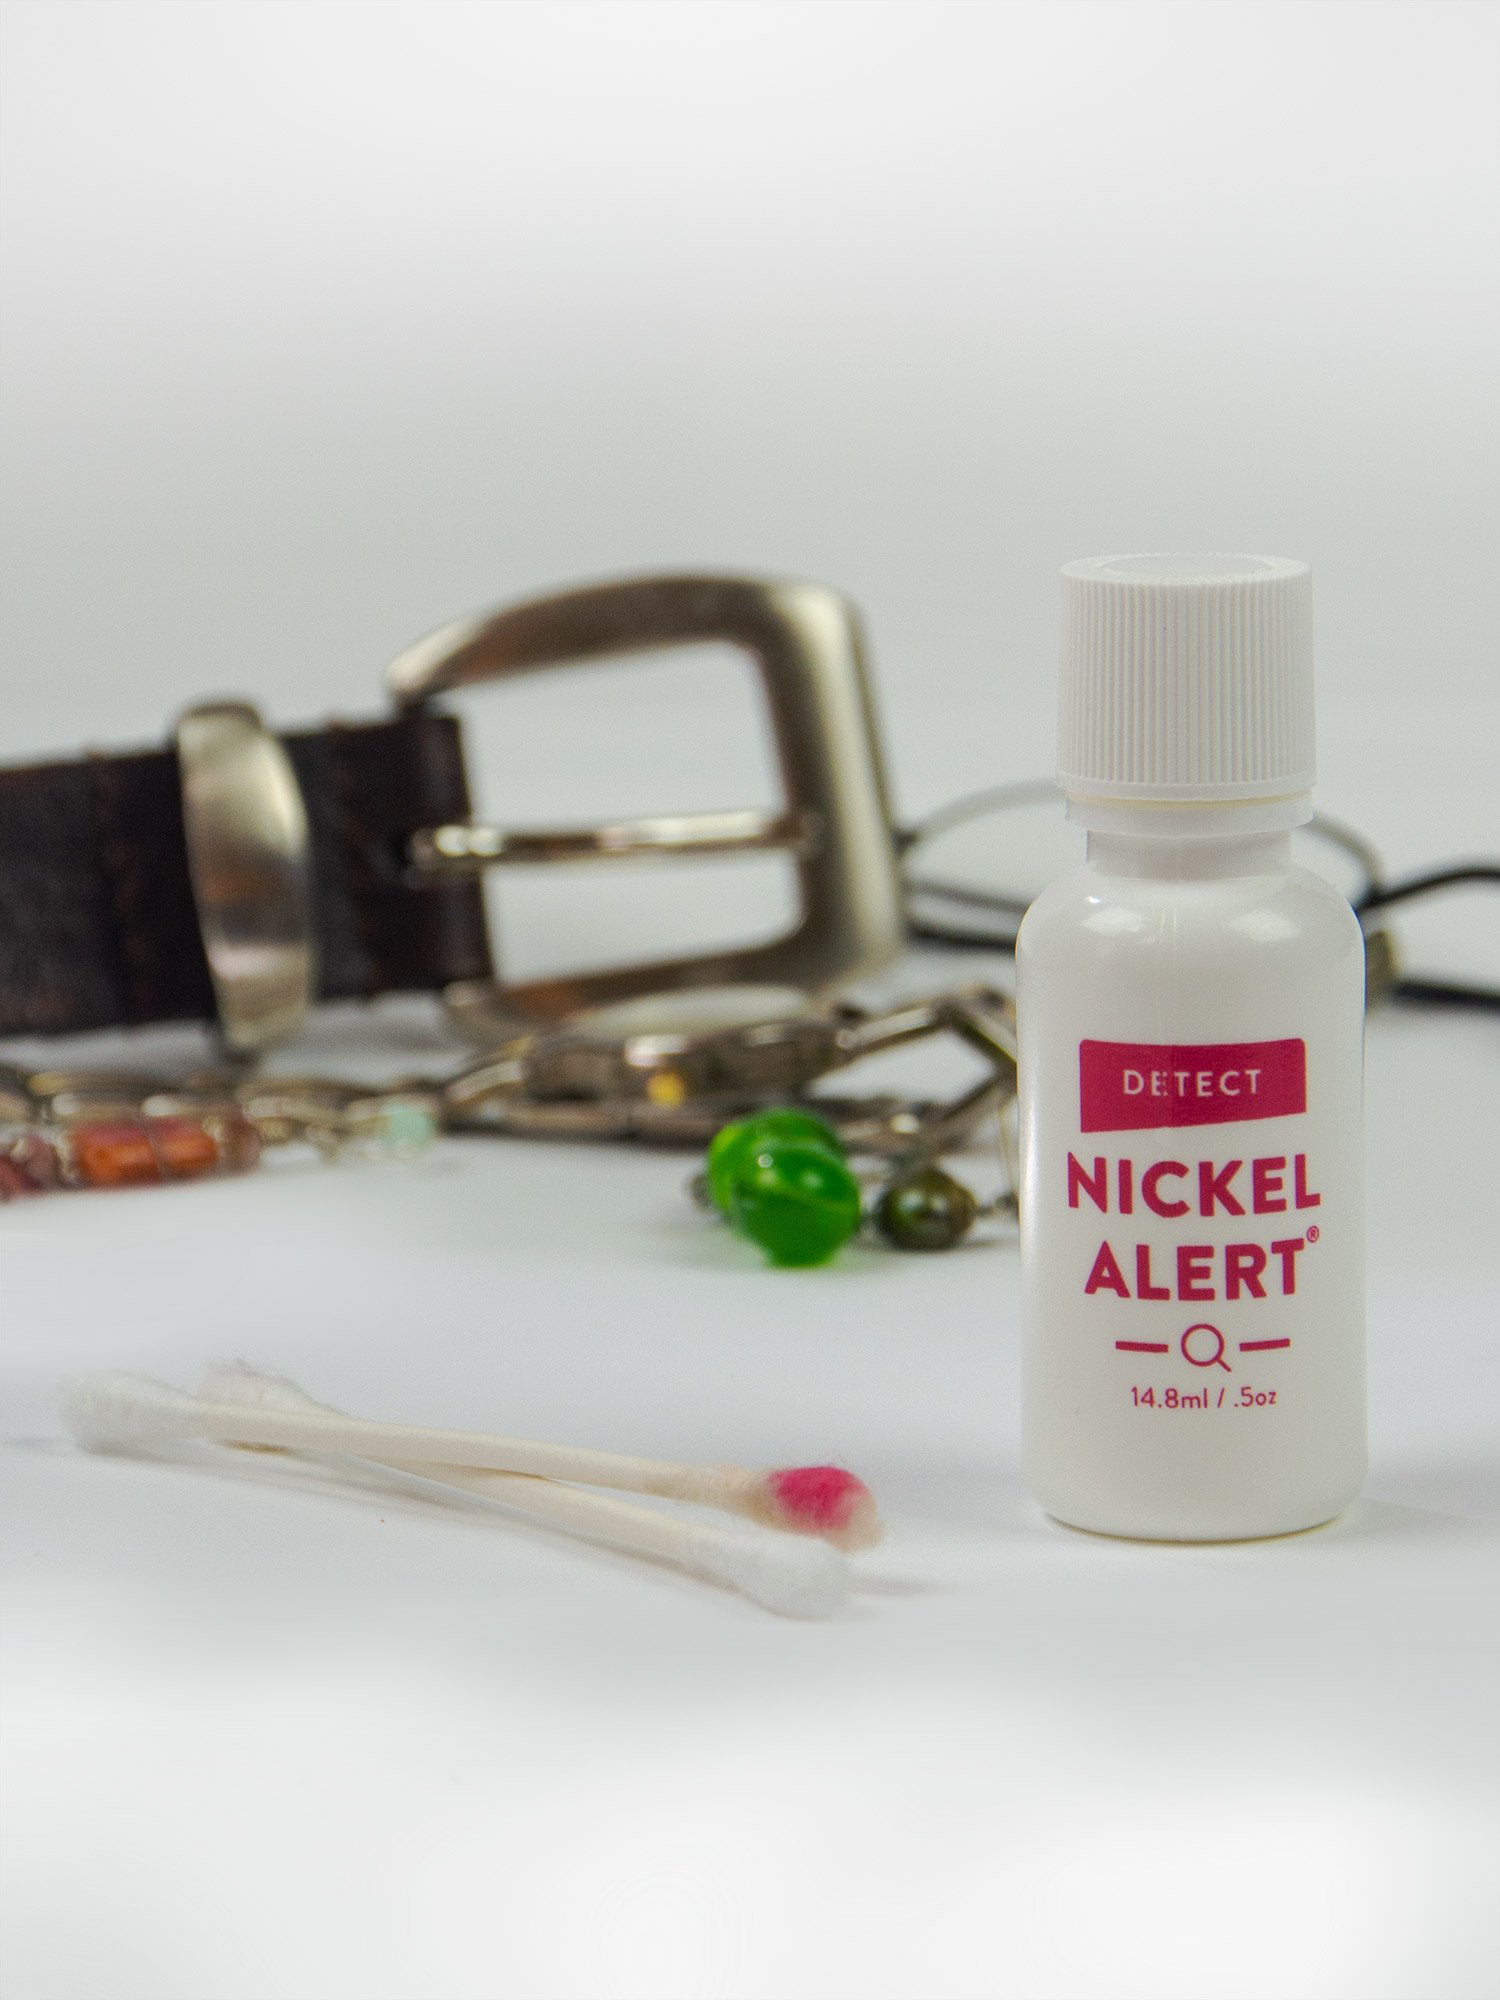 Nickel allergy testing meteorite test Nickel test kit